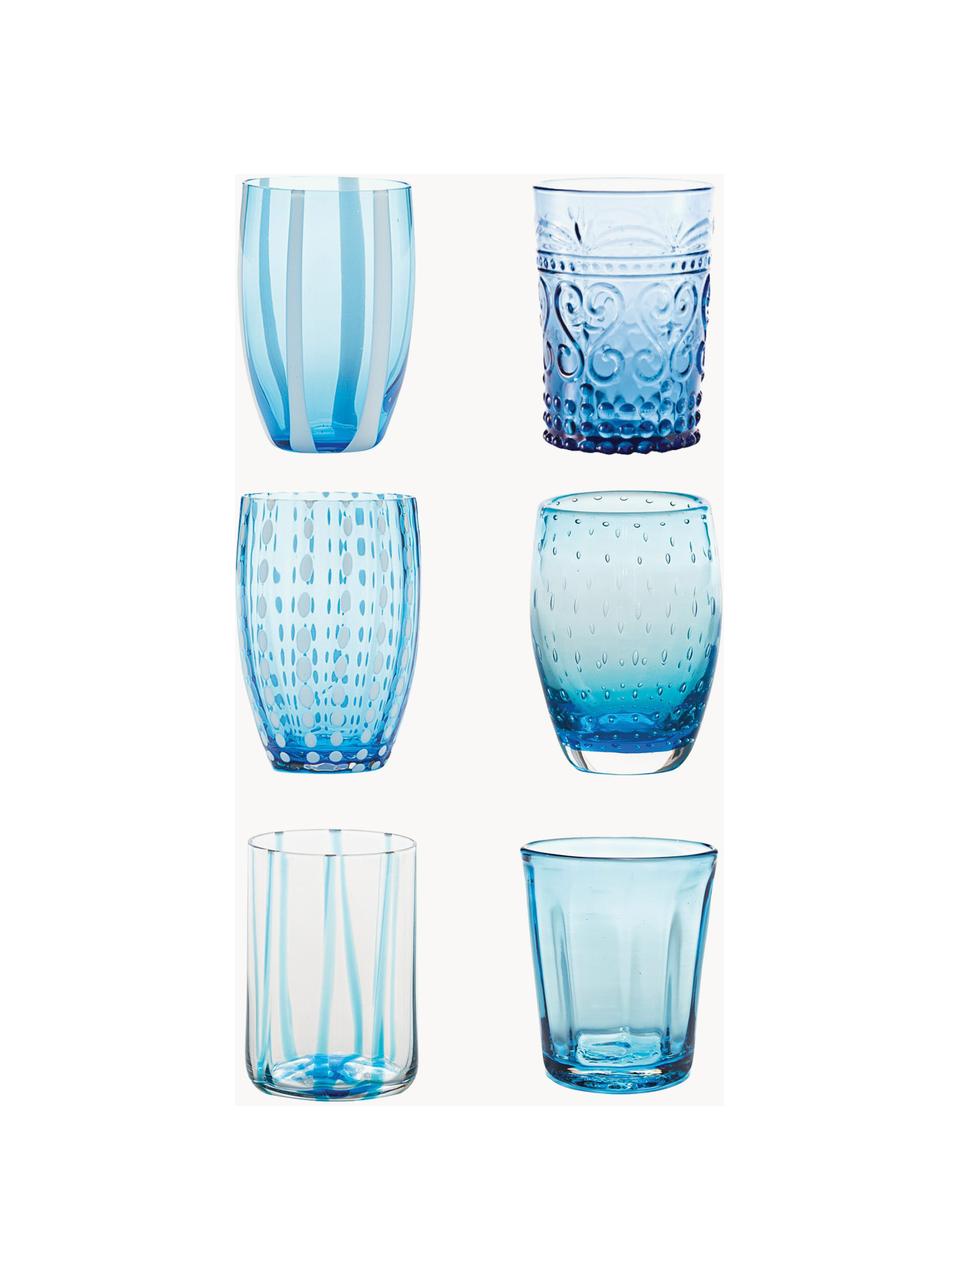 Handgefertigte Wassergläser Melting, 6er-Set, Glas, Hellblau, Transparent, Set mit verschiedenen Grössen